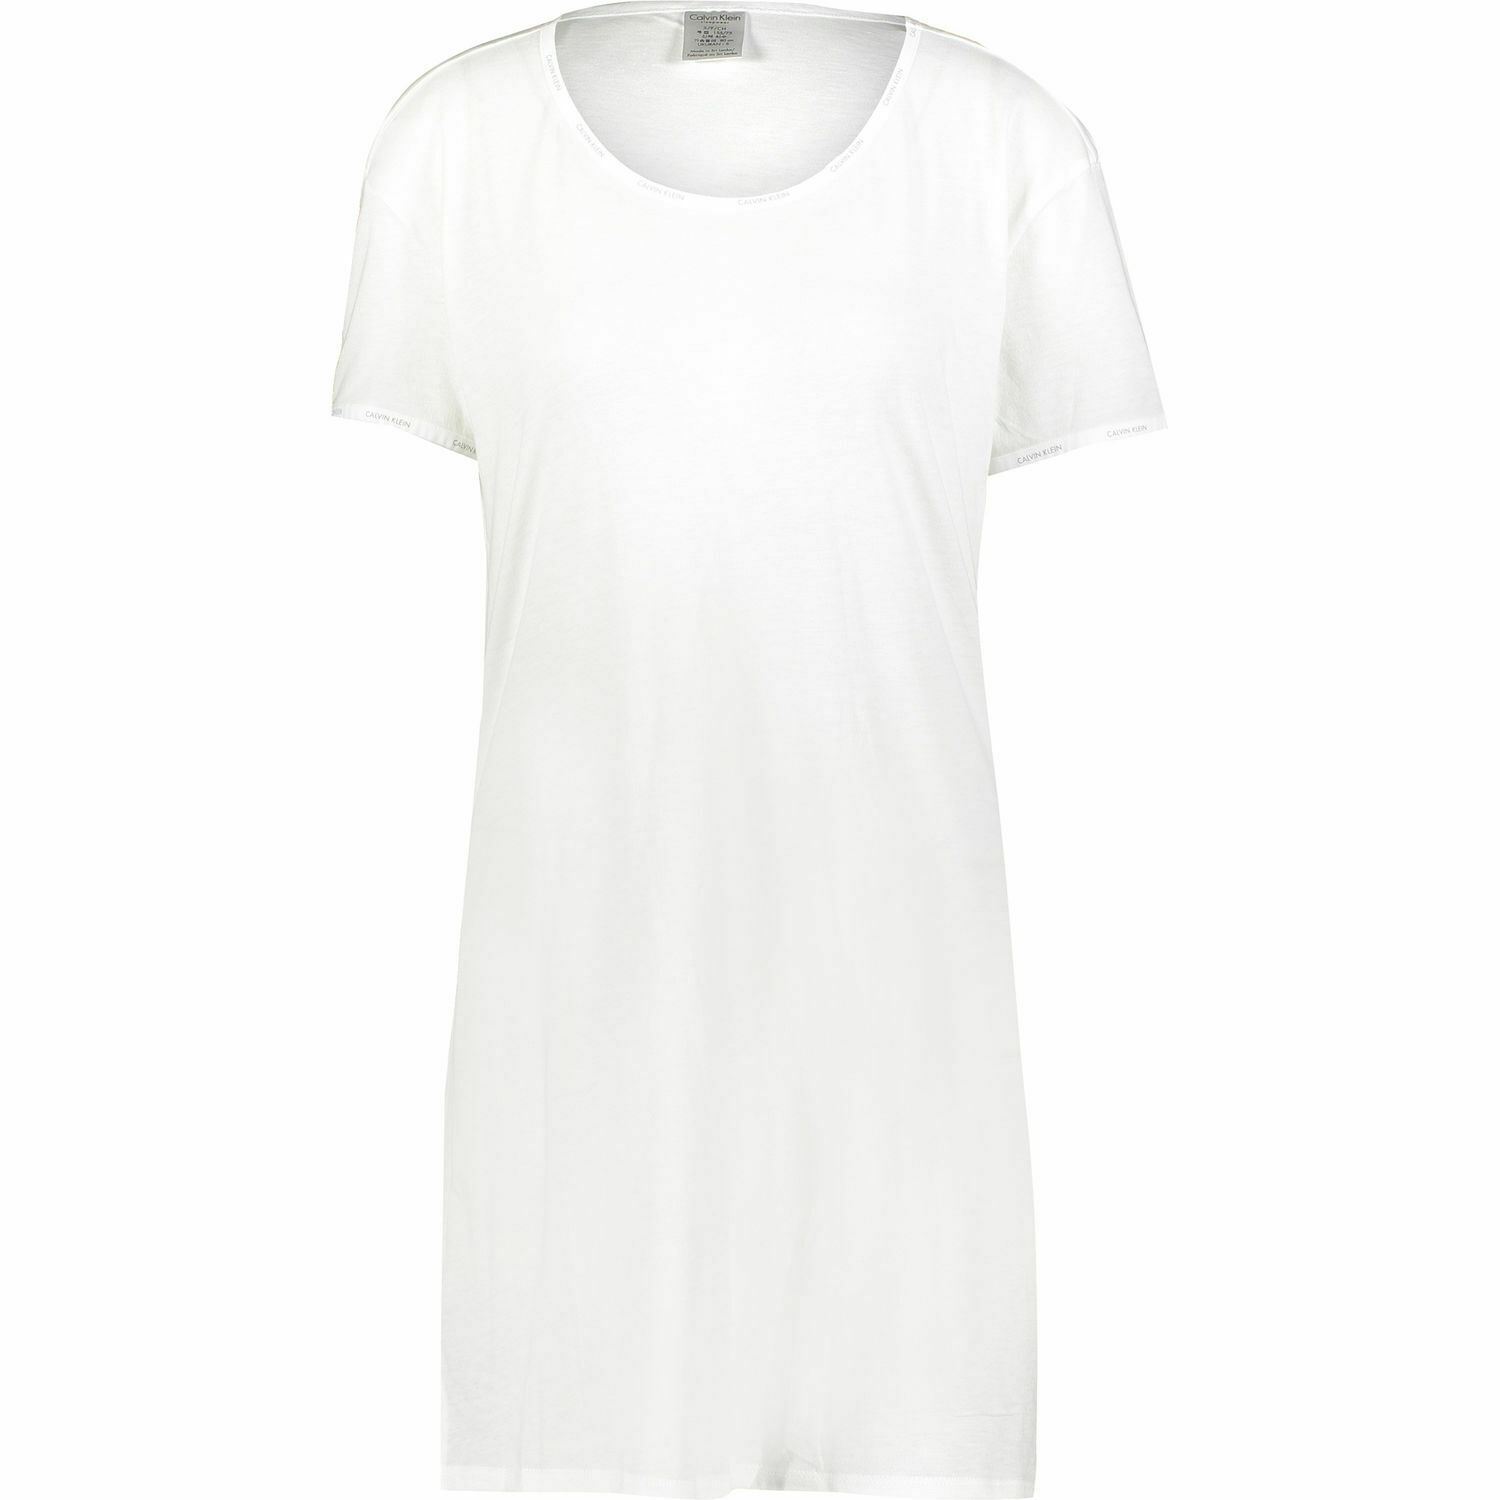 CALVIN KLEIN SLEEPWEAR Women's White Scoop Neck Night Shirt, Nightie ...